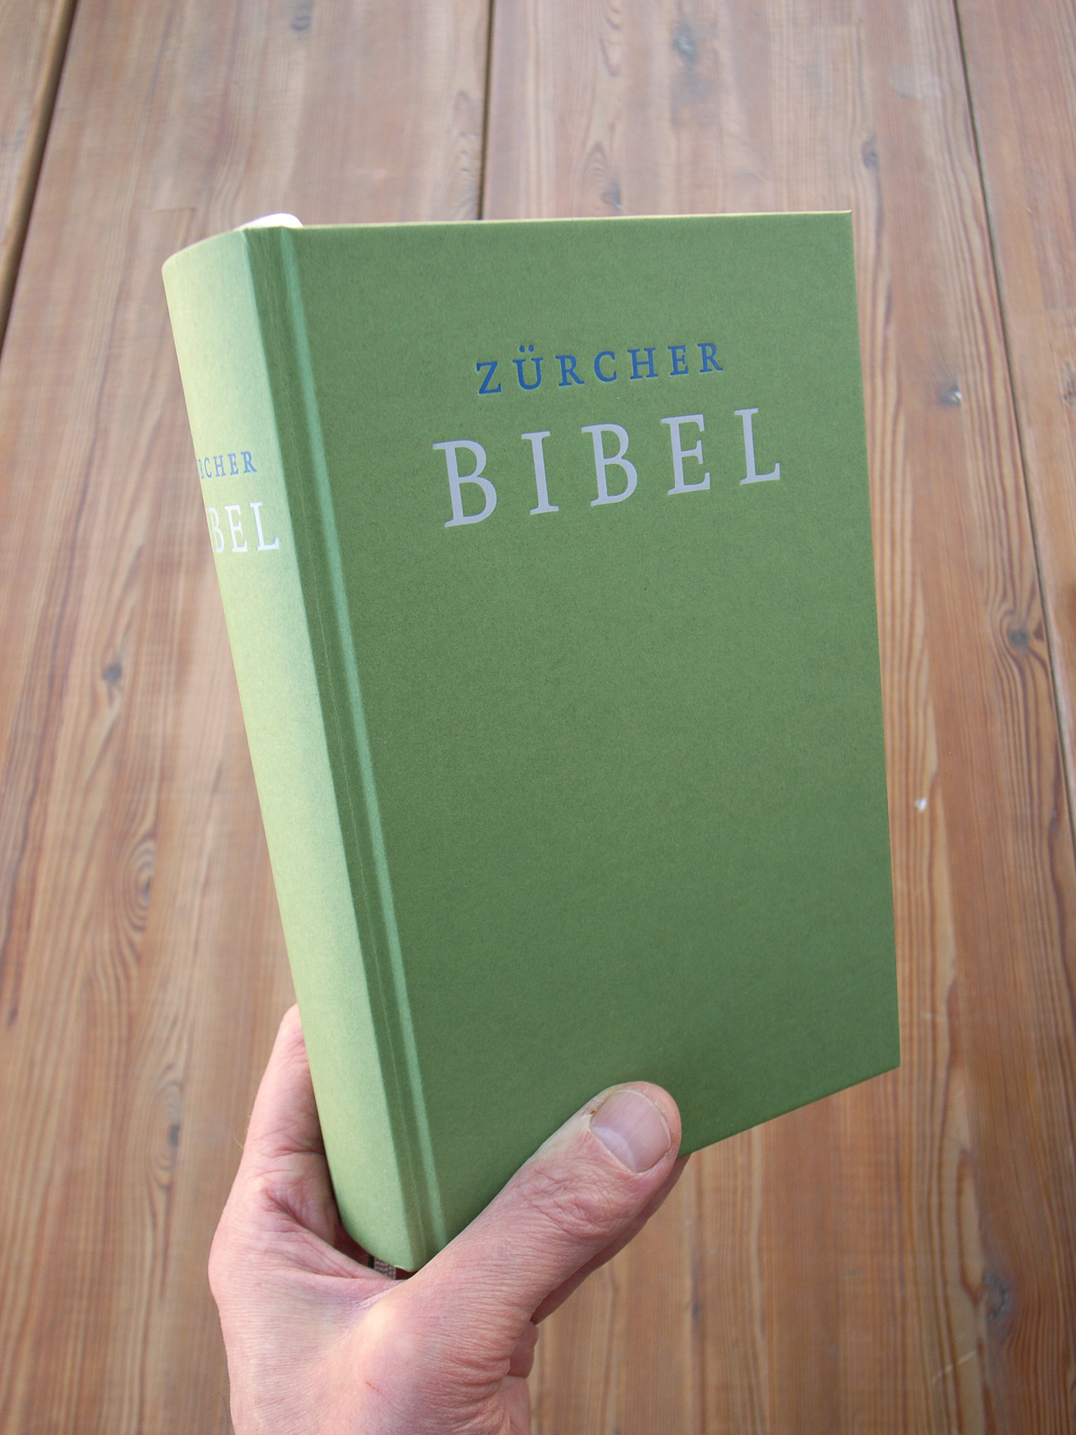 A new Zurich Bible